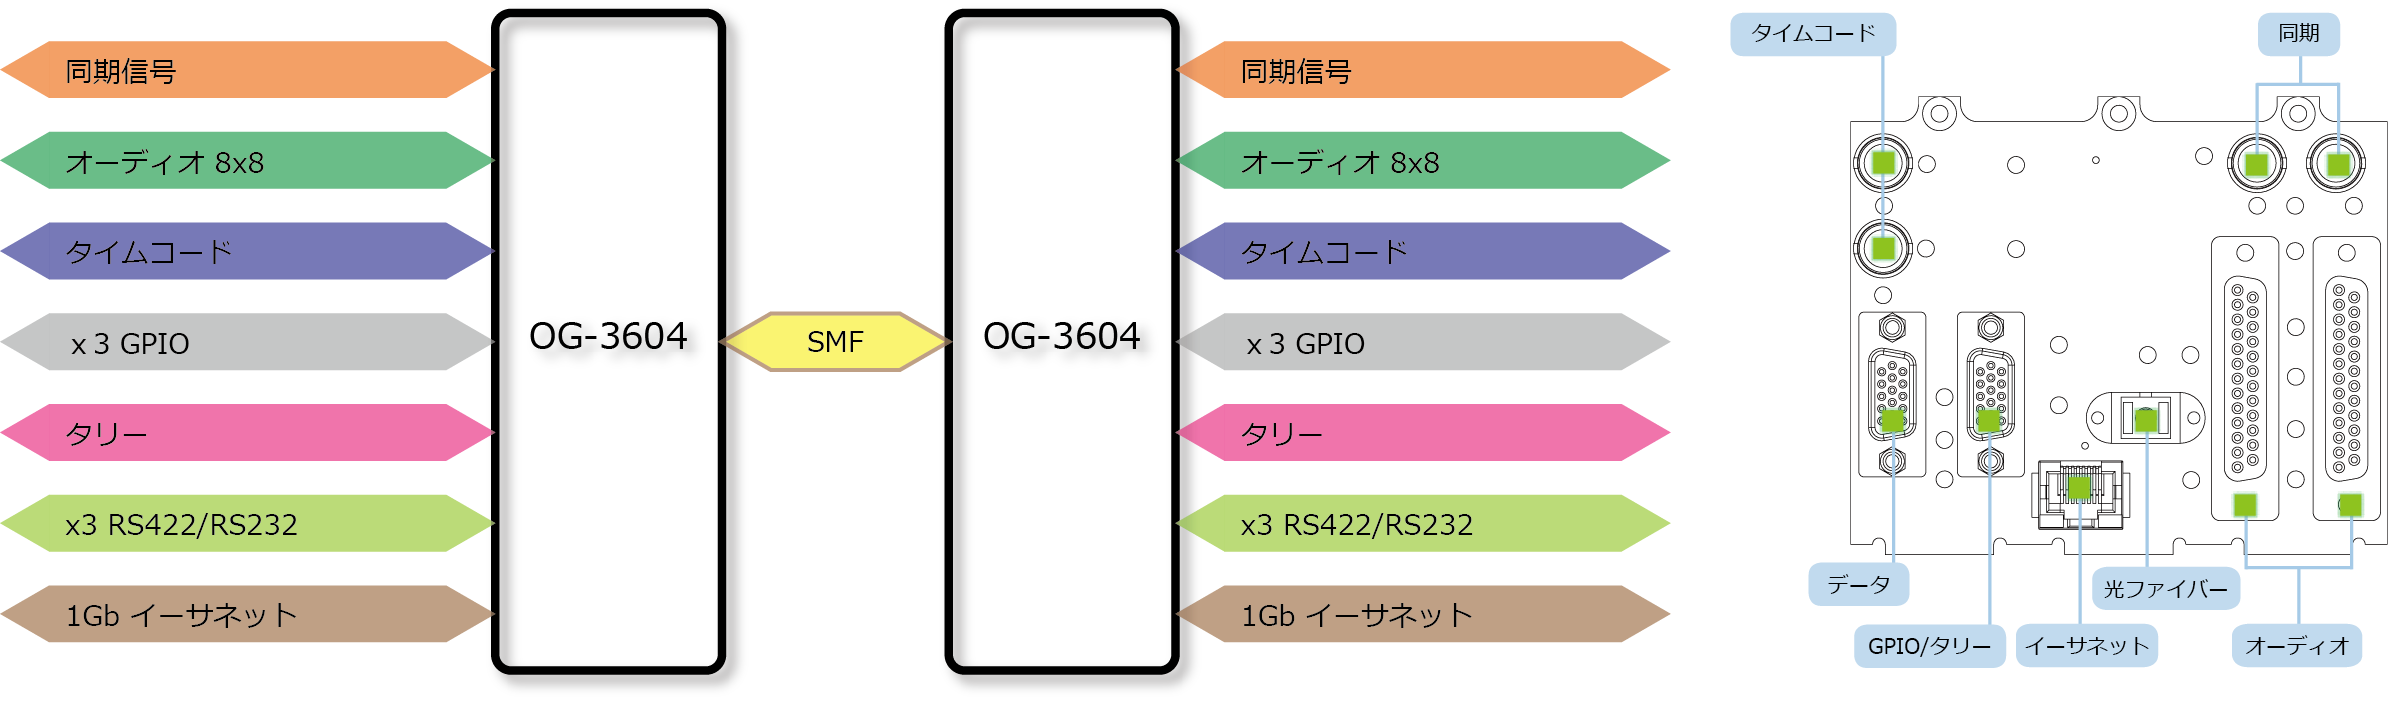 OG-3604 ブロック図/リアパネル図